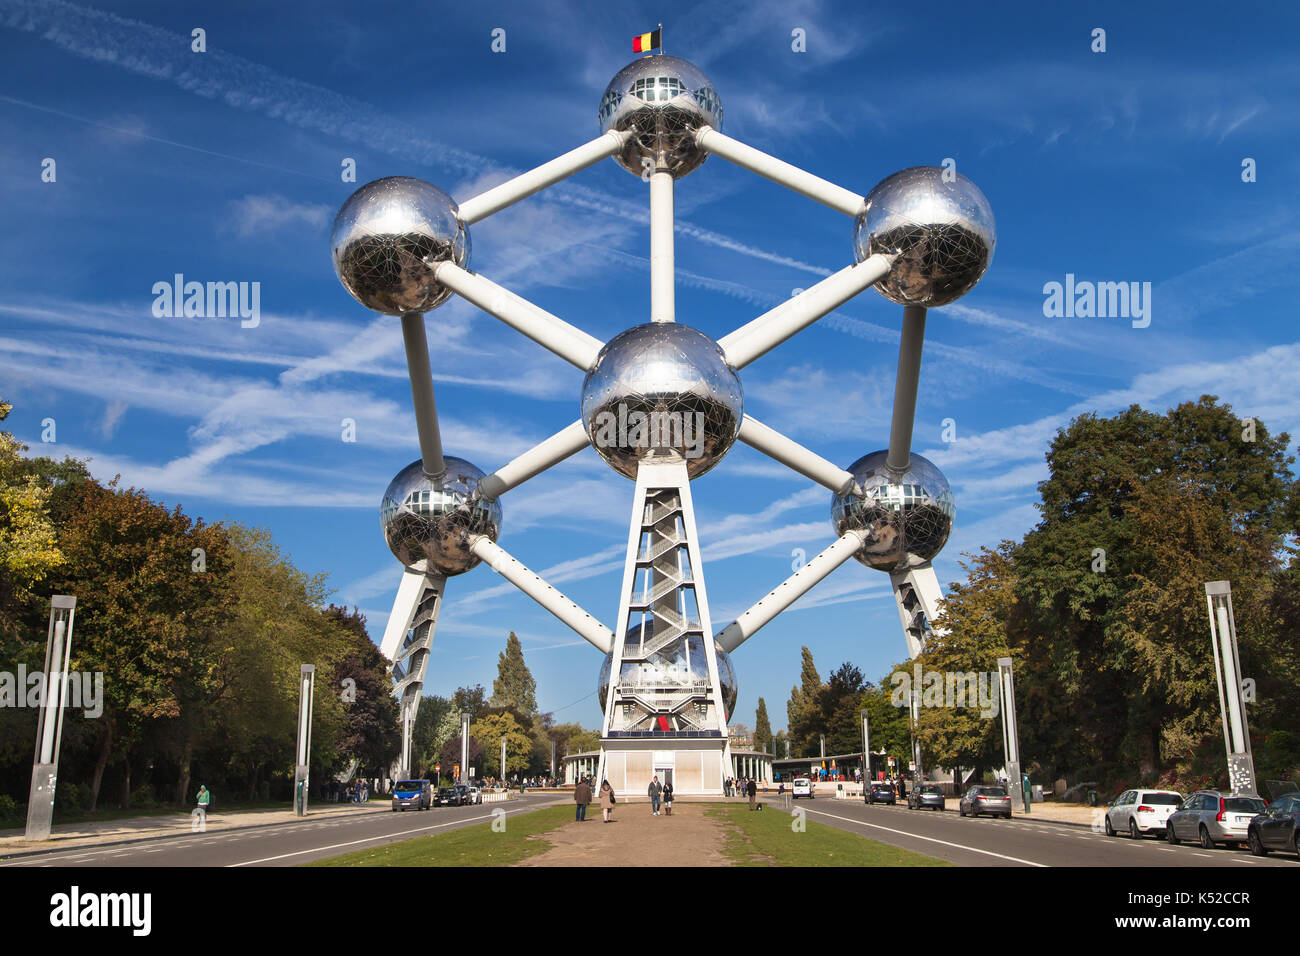 L'Atomium à Bruxelles, Belgique. Conçu par André Waterkeyn et André et Jean Polak, il a été construit pour l'Exposition Universelle de 1958. Banque D'Images